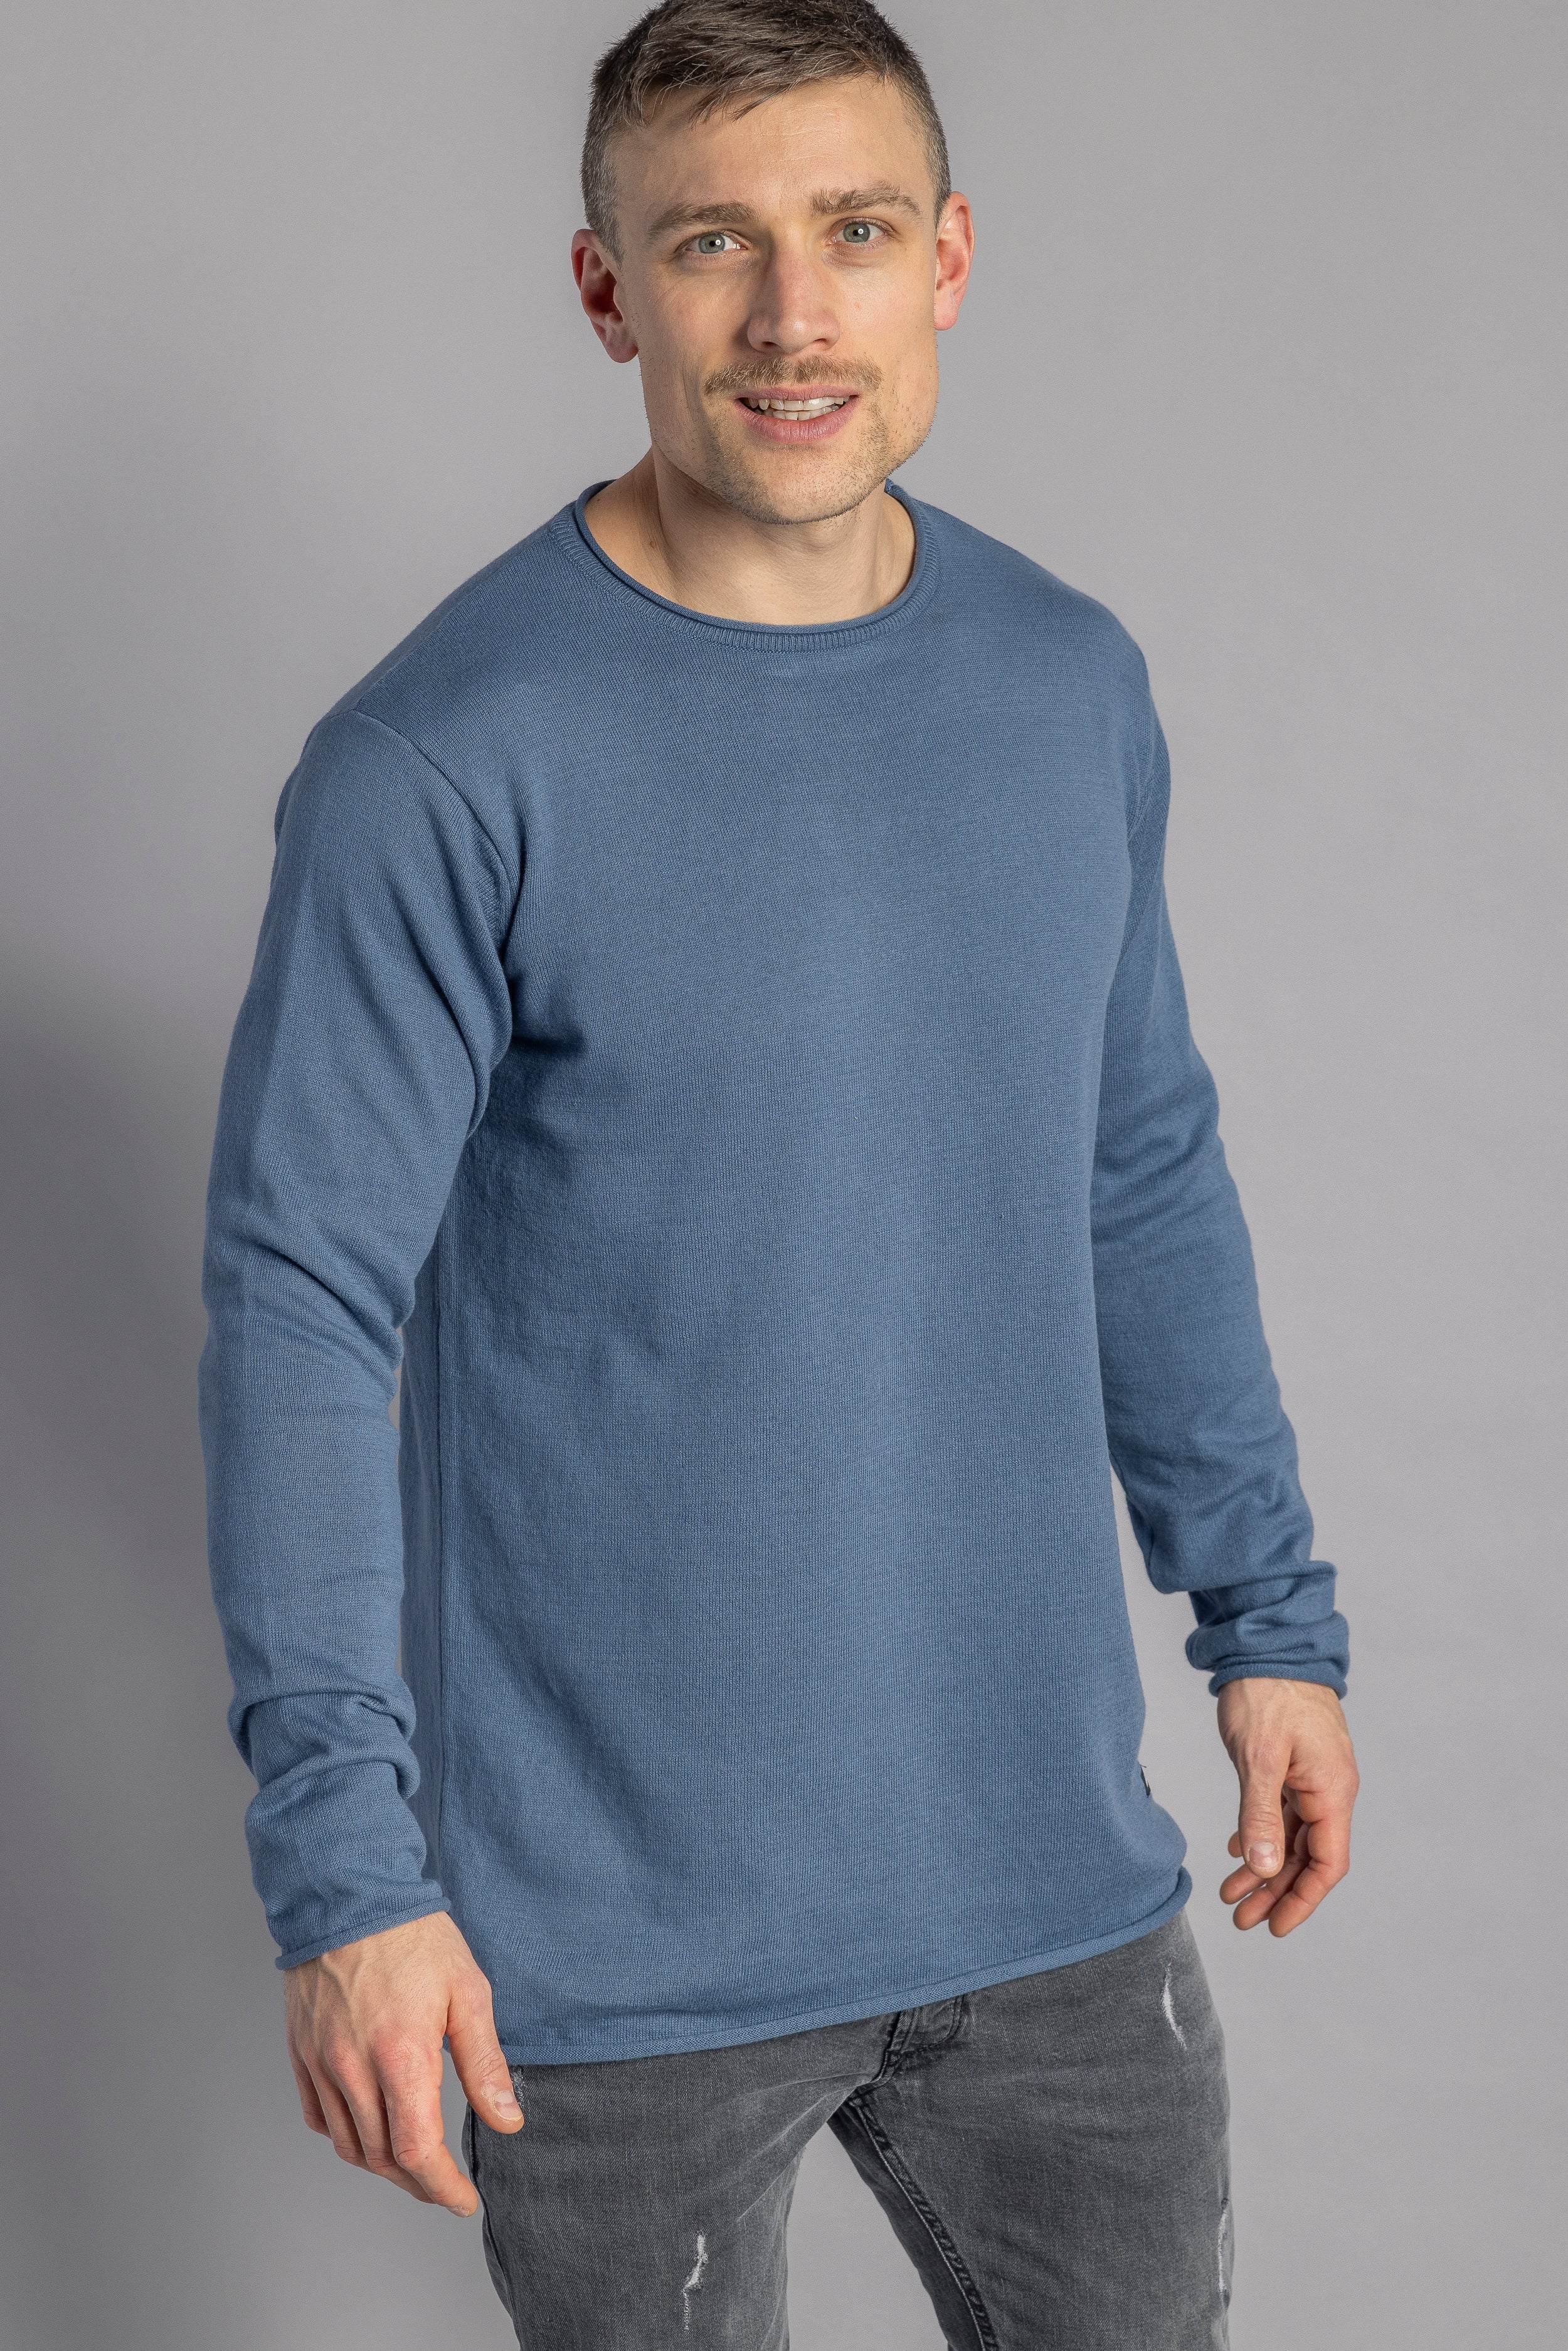 Blauer Pullover Strick-Longsleeve aus 100% Bio-Baumwolle von DIRTS